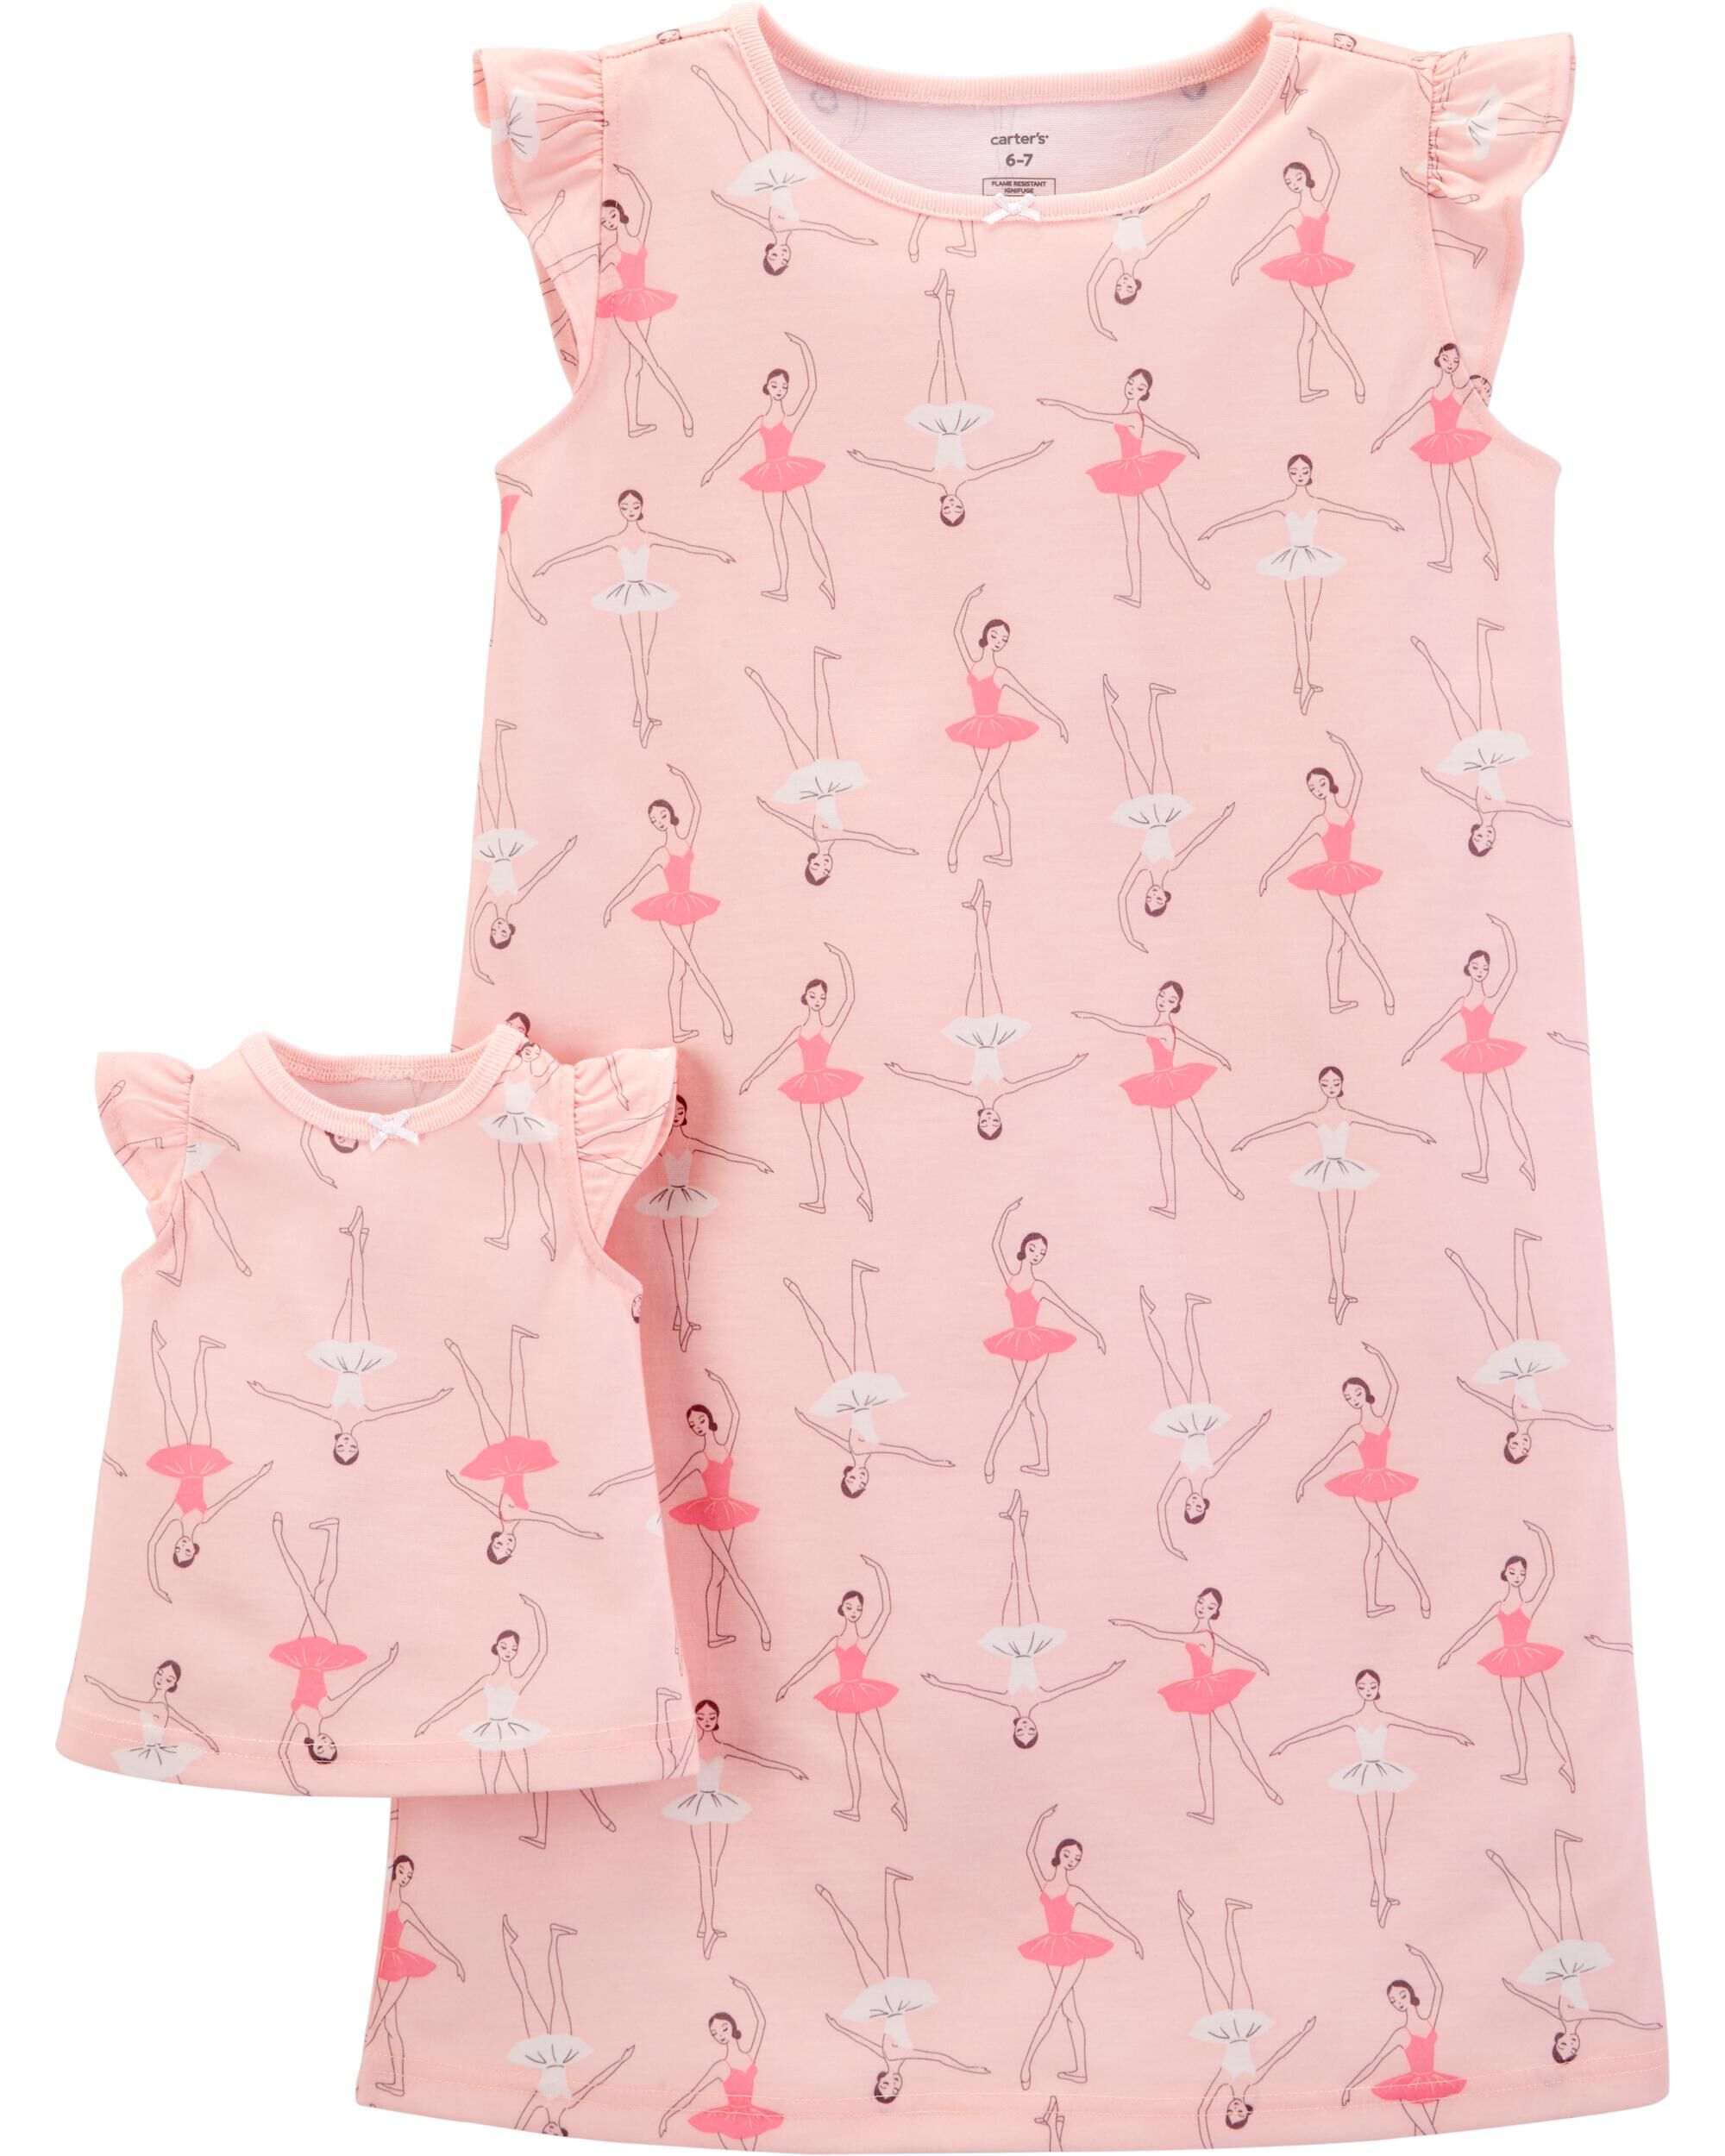 carter's ballerina pajamas